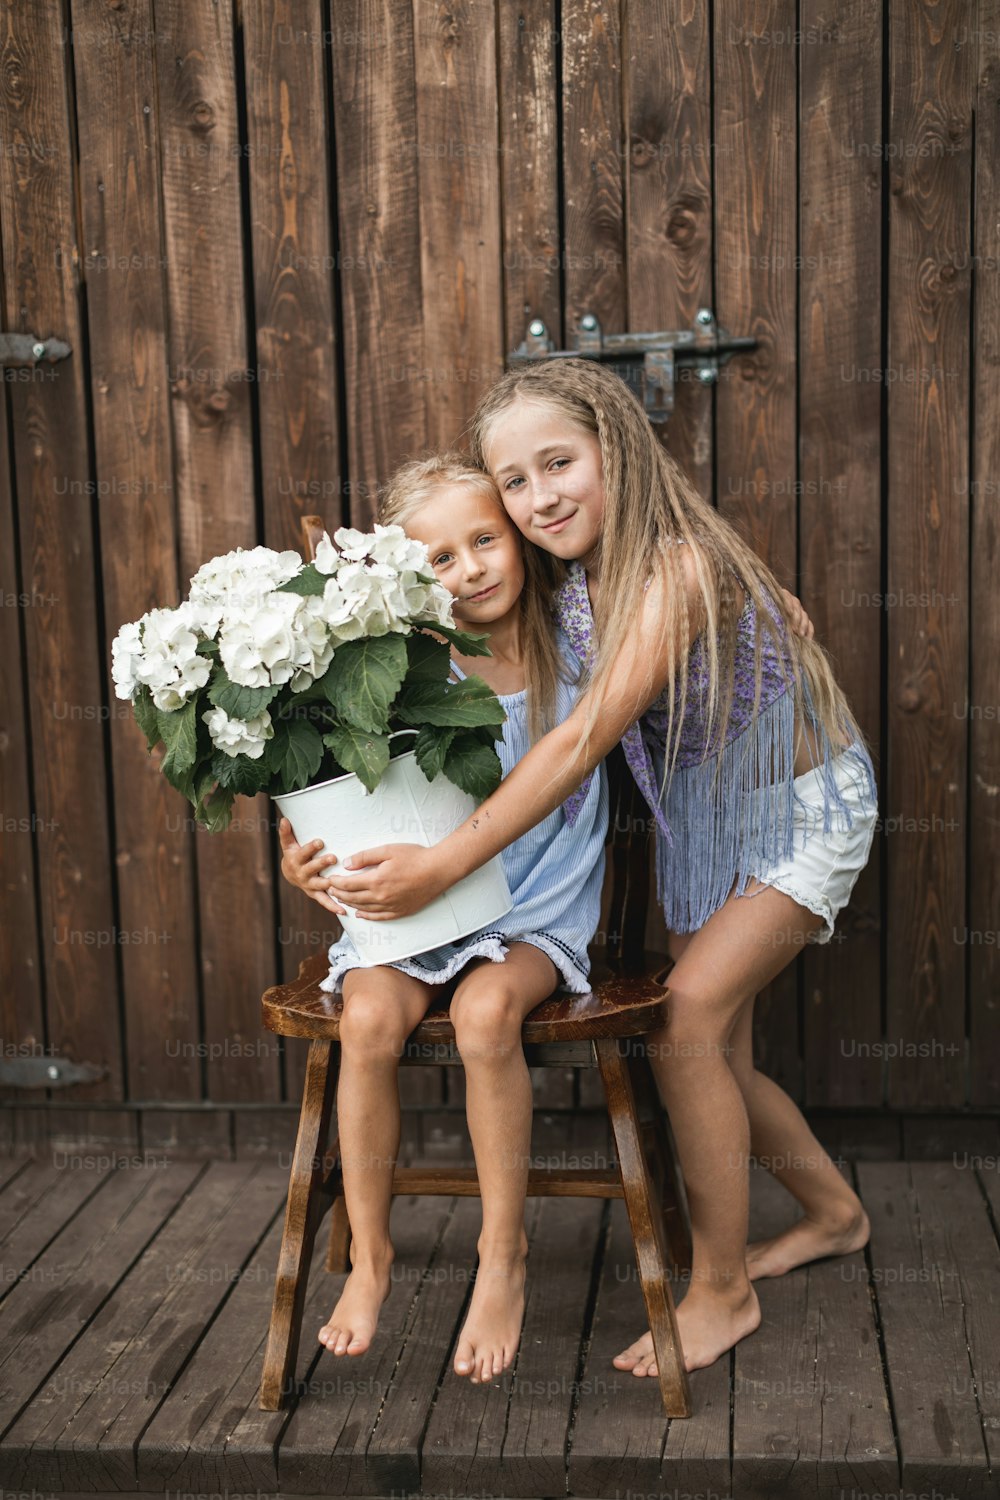 Felizes sorridentes meninas irmãs no fundo da parede do celeiro de madeira, uma menina está sentada na cadeira de madeira com buquê de flores de hortênsia, outra menina em pé nas proximidades e abraçando.